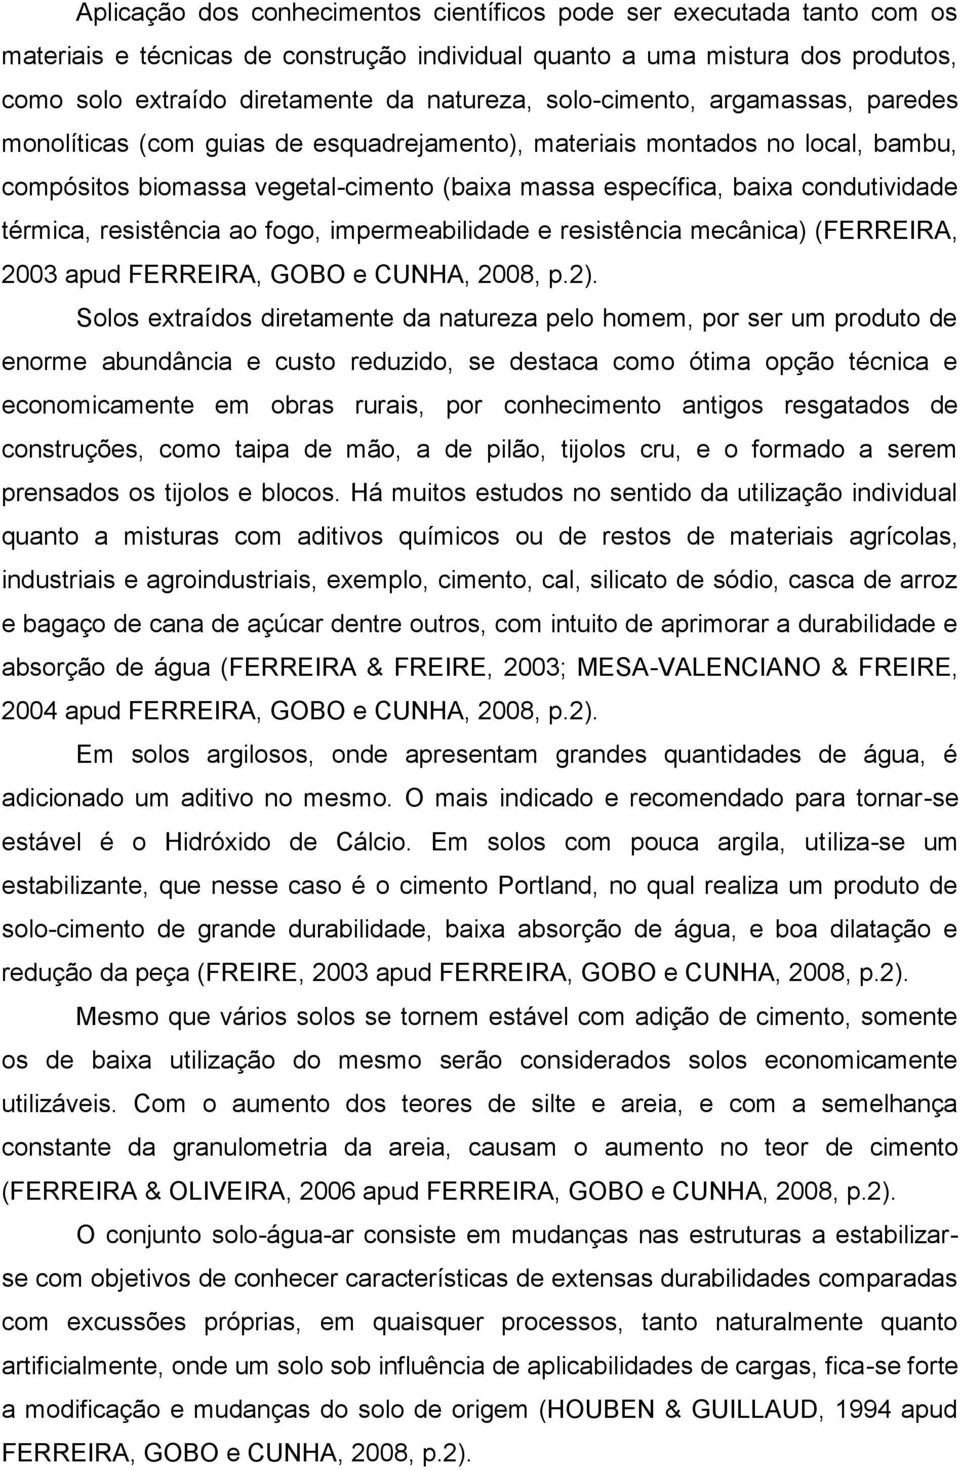 térmica, resistência ao fogo, impermeabilidade e resistência mecânica) (FERREIRA, 2003 apud FERREIRA, GOBO e CUNHA, 2008, p.2).